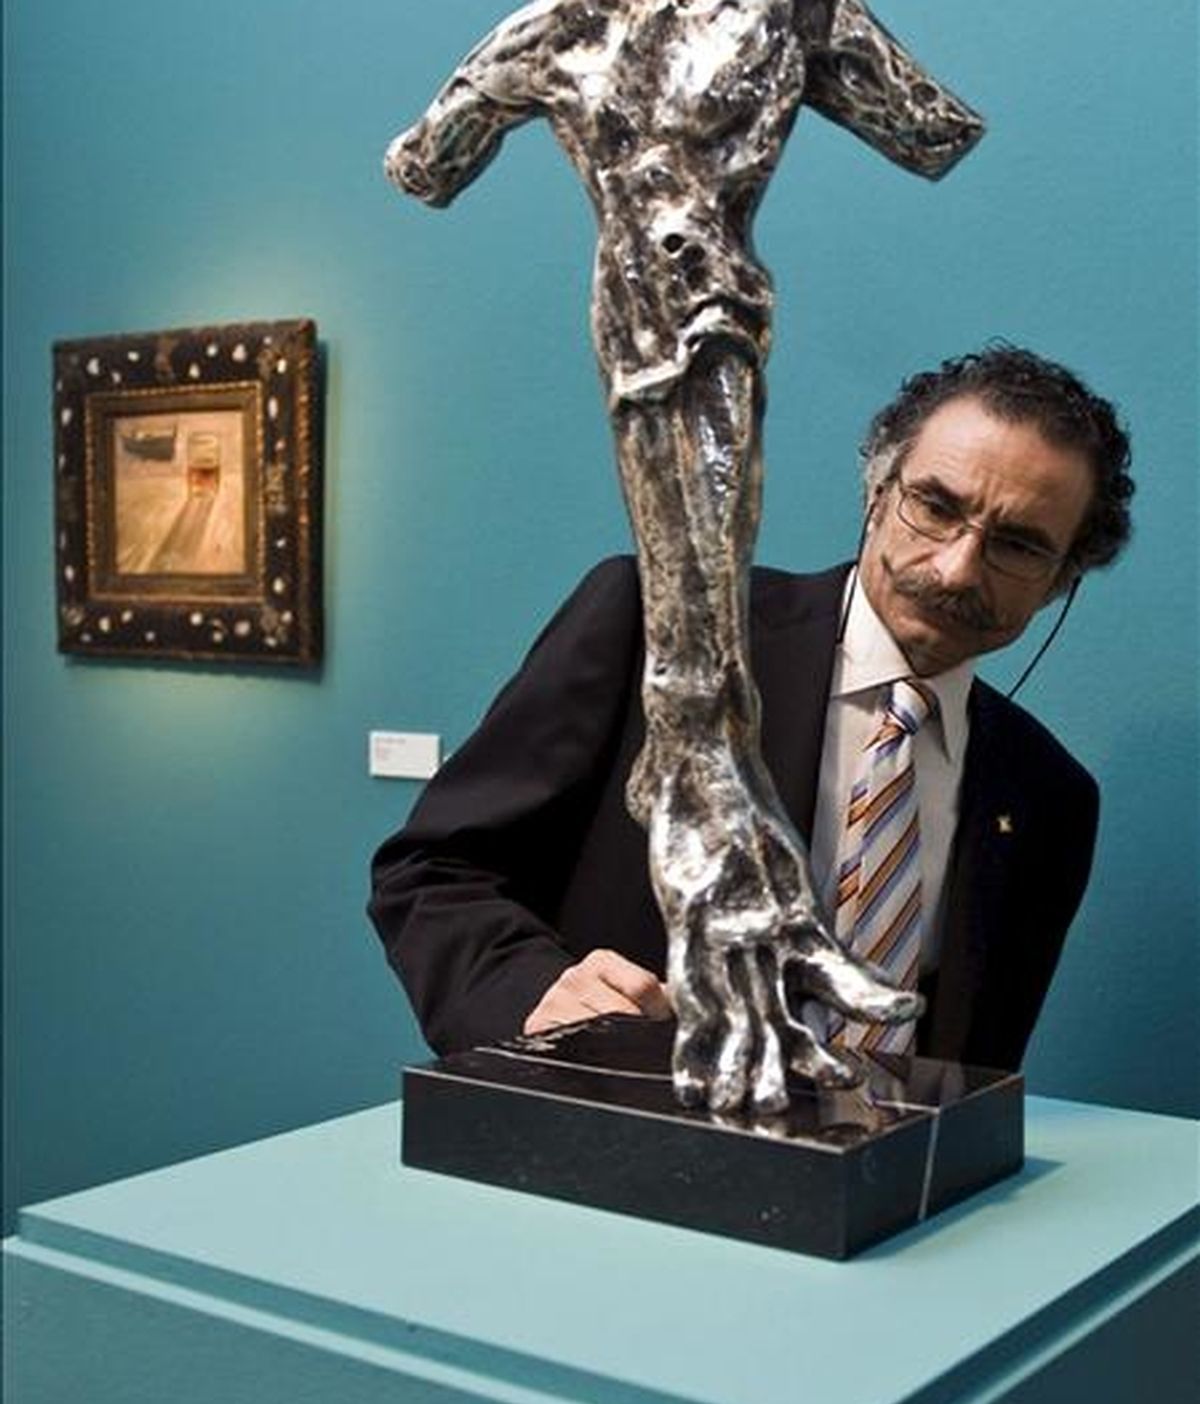 El ex director del Real Círculo Artístico de Barcelona y propietario de parte de las obras de la exposición "Salvador Dalí, veinte años después", Juan Javier Bofill, durante la inauguración de dicha exposición hoy en la Casa del Cordón de Burgos. EFE